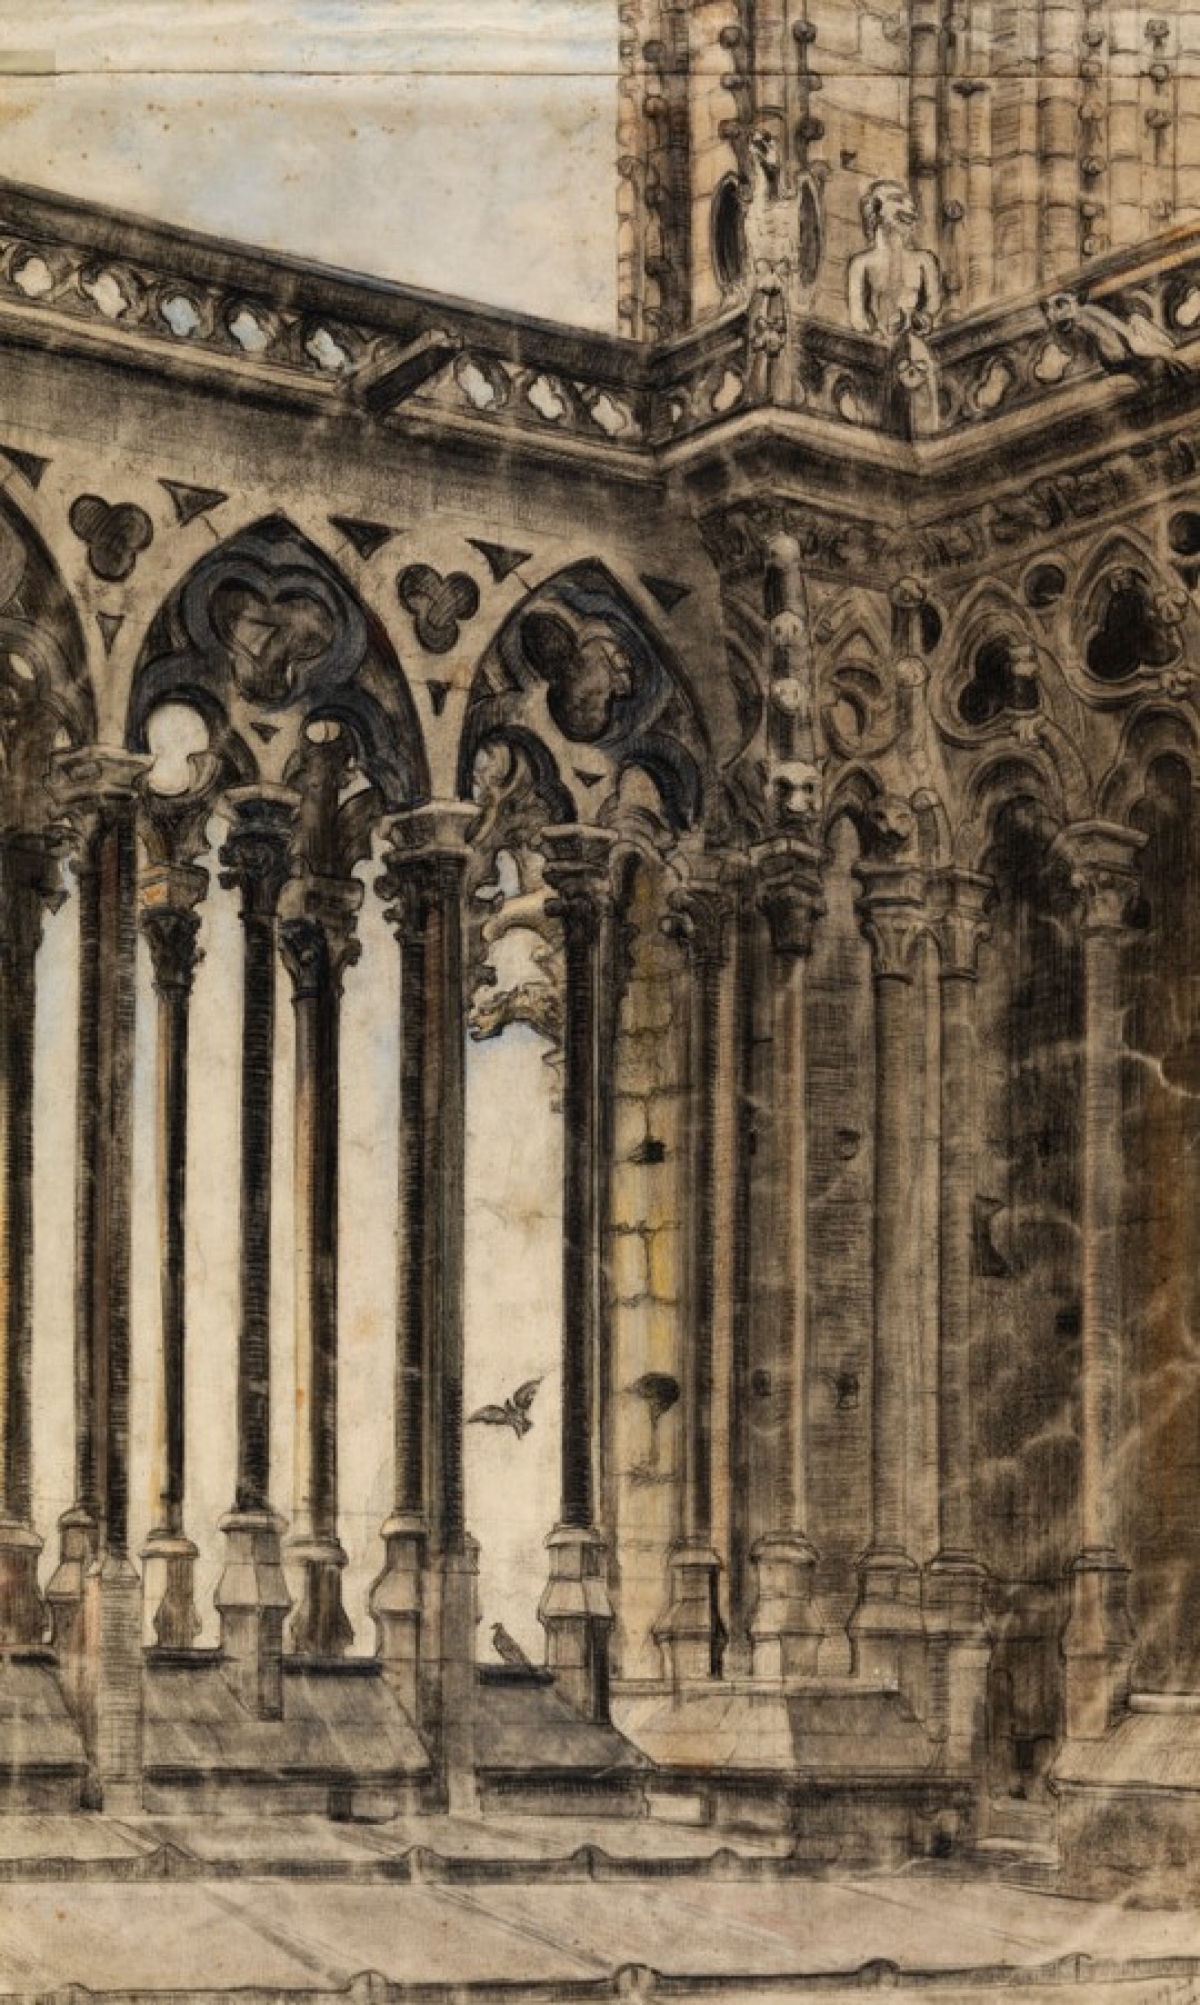 Galerie gothique de Notre Dame